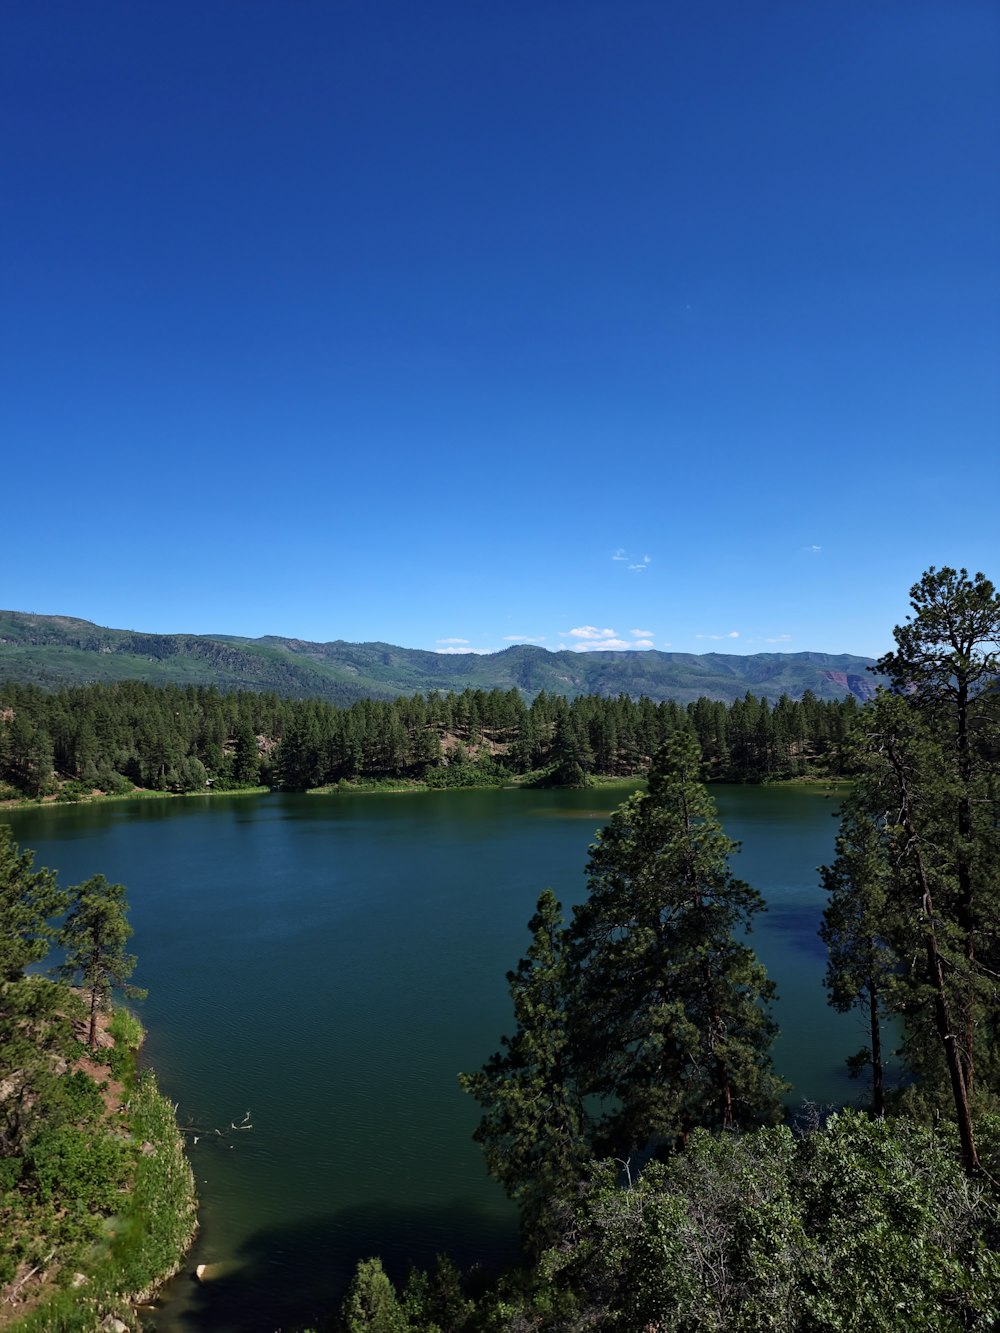 Un lago rodeado de árboles y montañas bajo un cielo azul